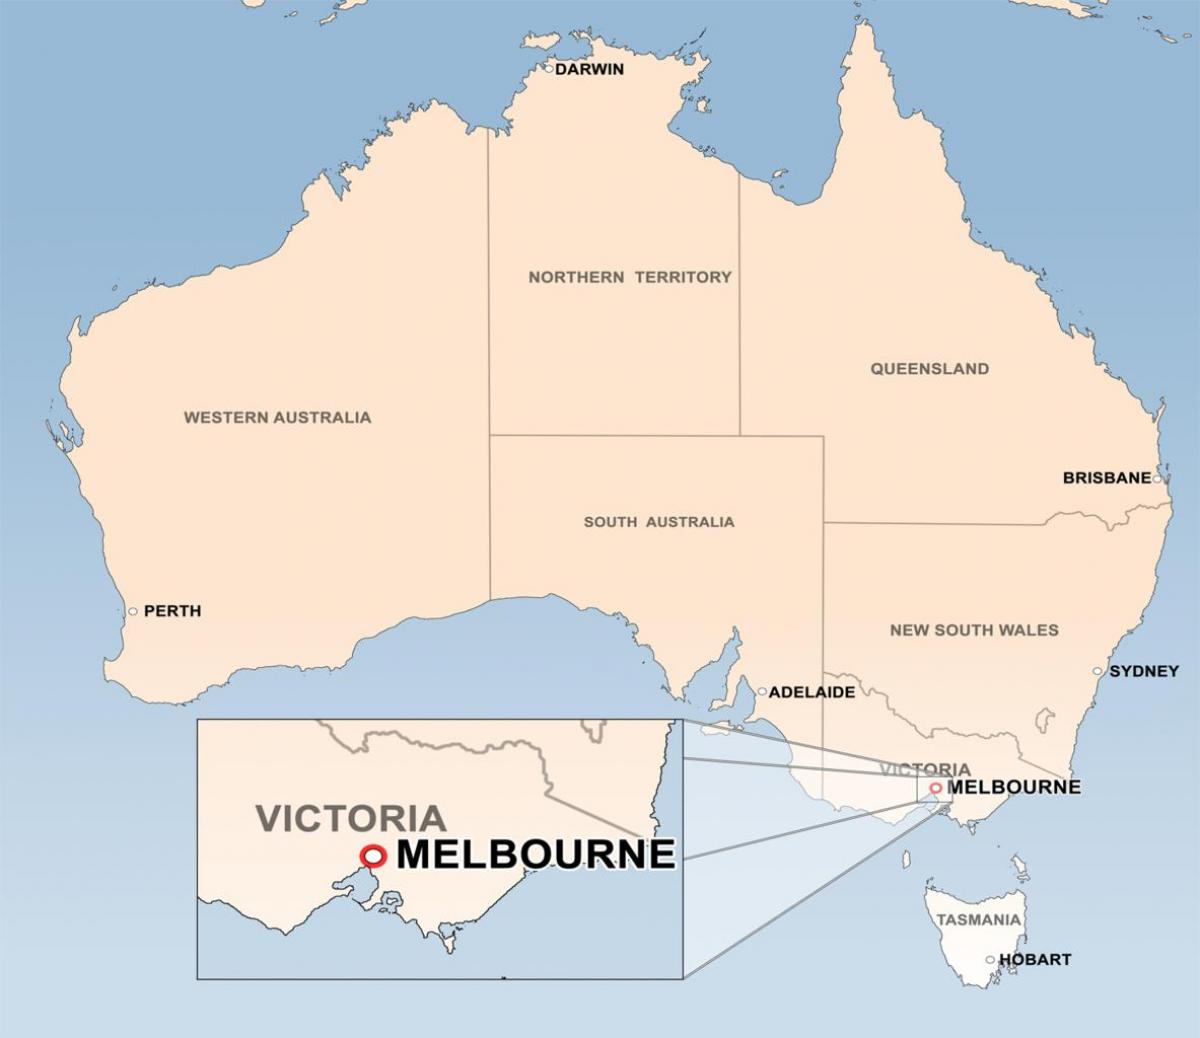 քարտեզ Մելբուռնի Ավստրալիա